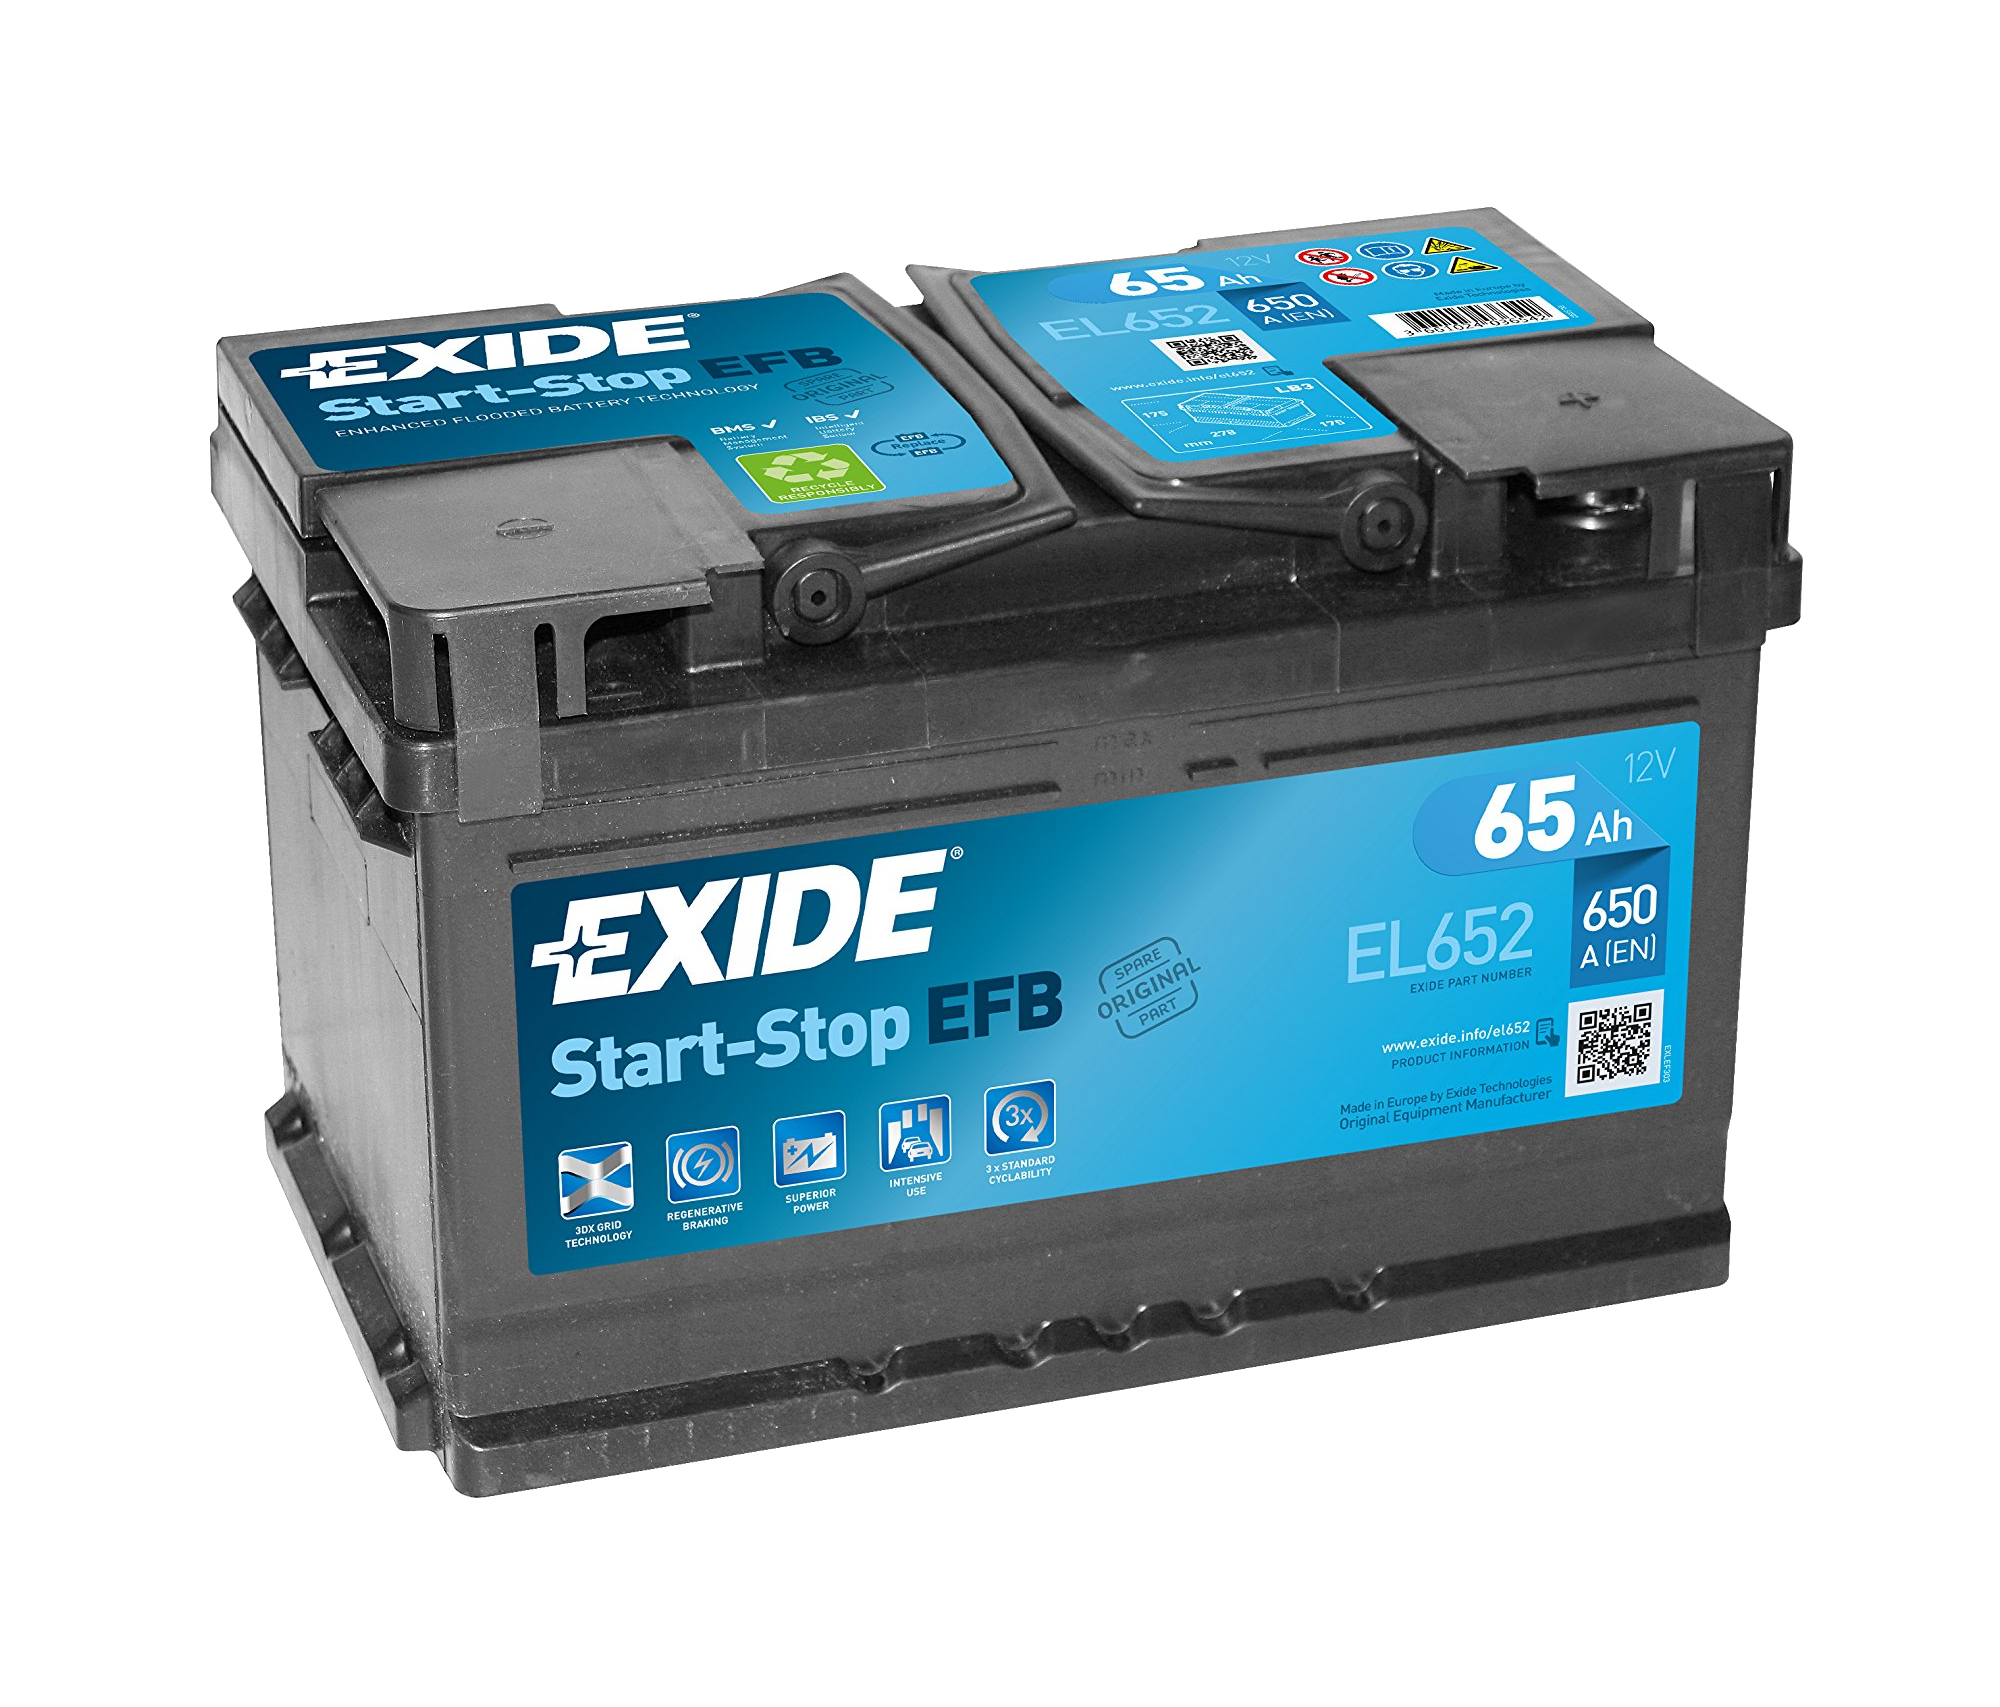 Exide Start-Stop EFB EL652